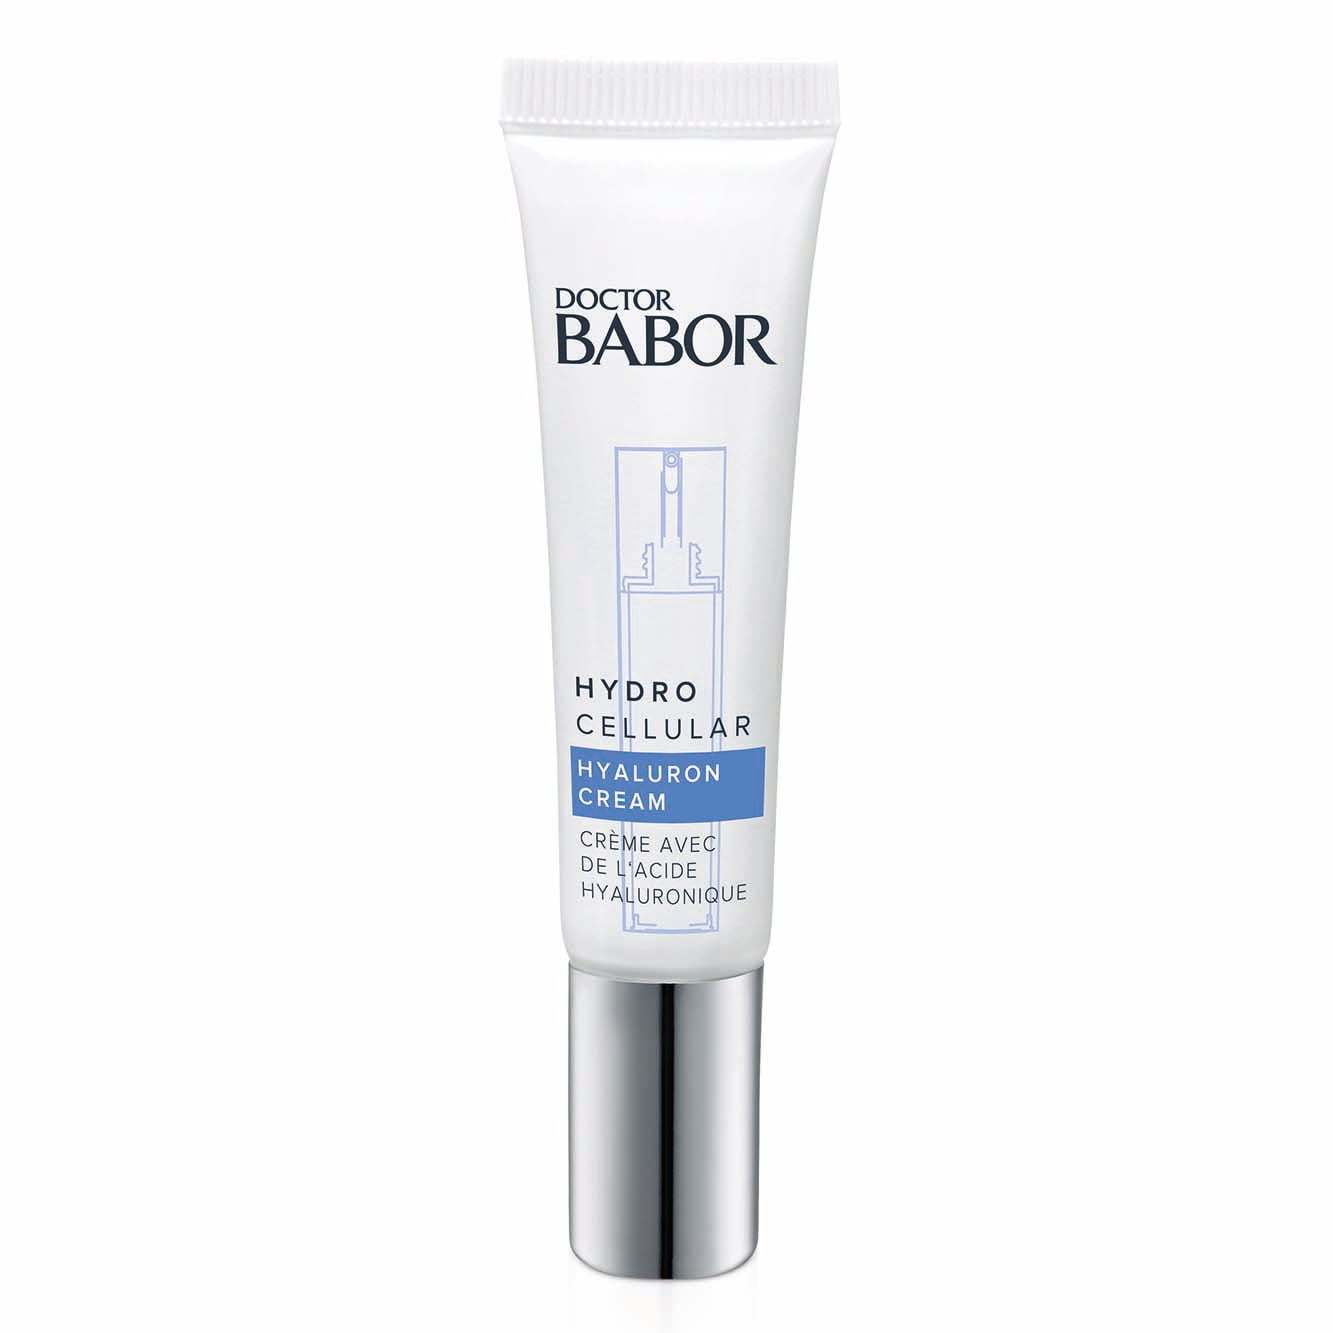 Doctor Babor Hydro Cellular Hyaluron Cream er en lett, behagelig, 24-timers fuktighetskrem som gir øyeblikkelig, kontinuerlig fuktighet og gir uttørket hud som viser de første tegnene på tørrhetslinjer et friskt, silkemykt utseende og skaper en rosenrød hudfarge.